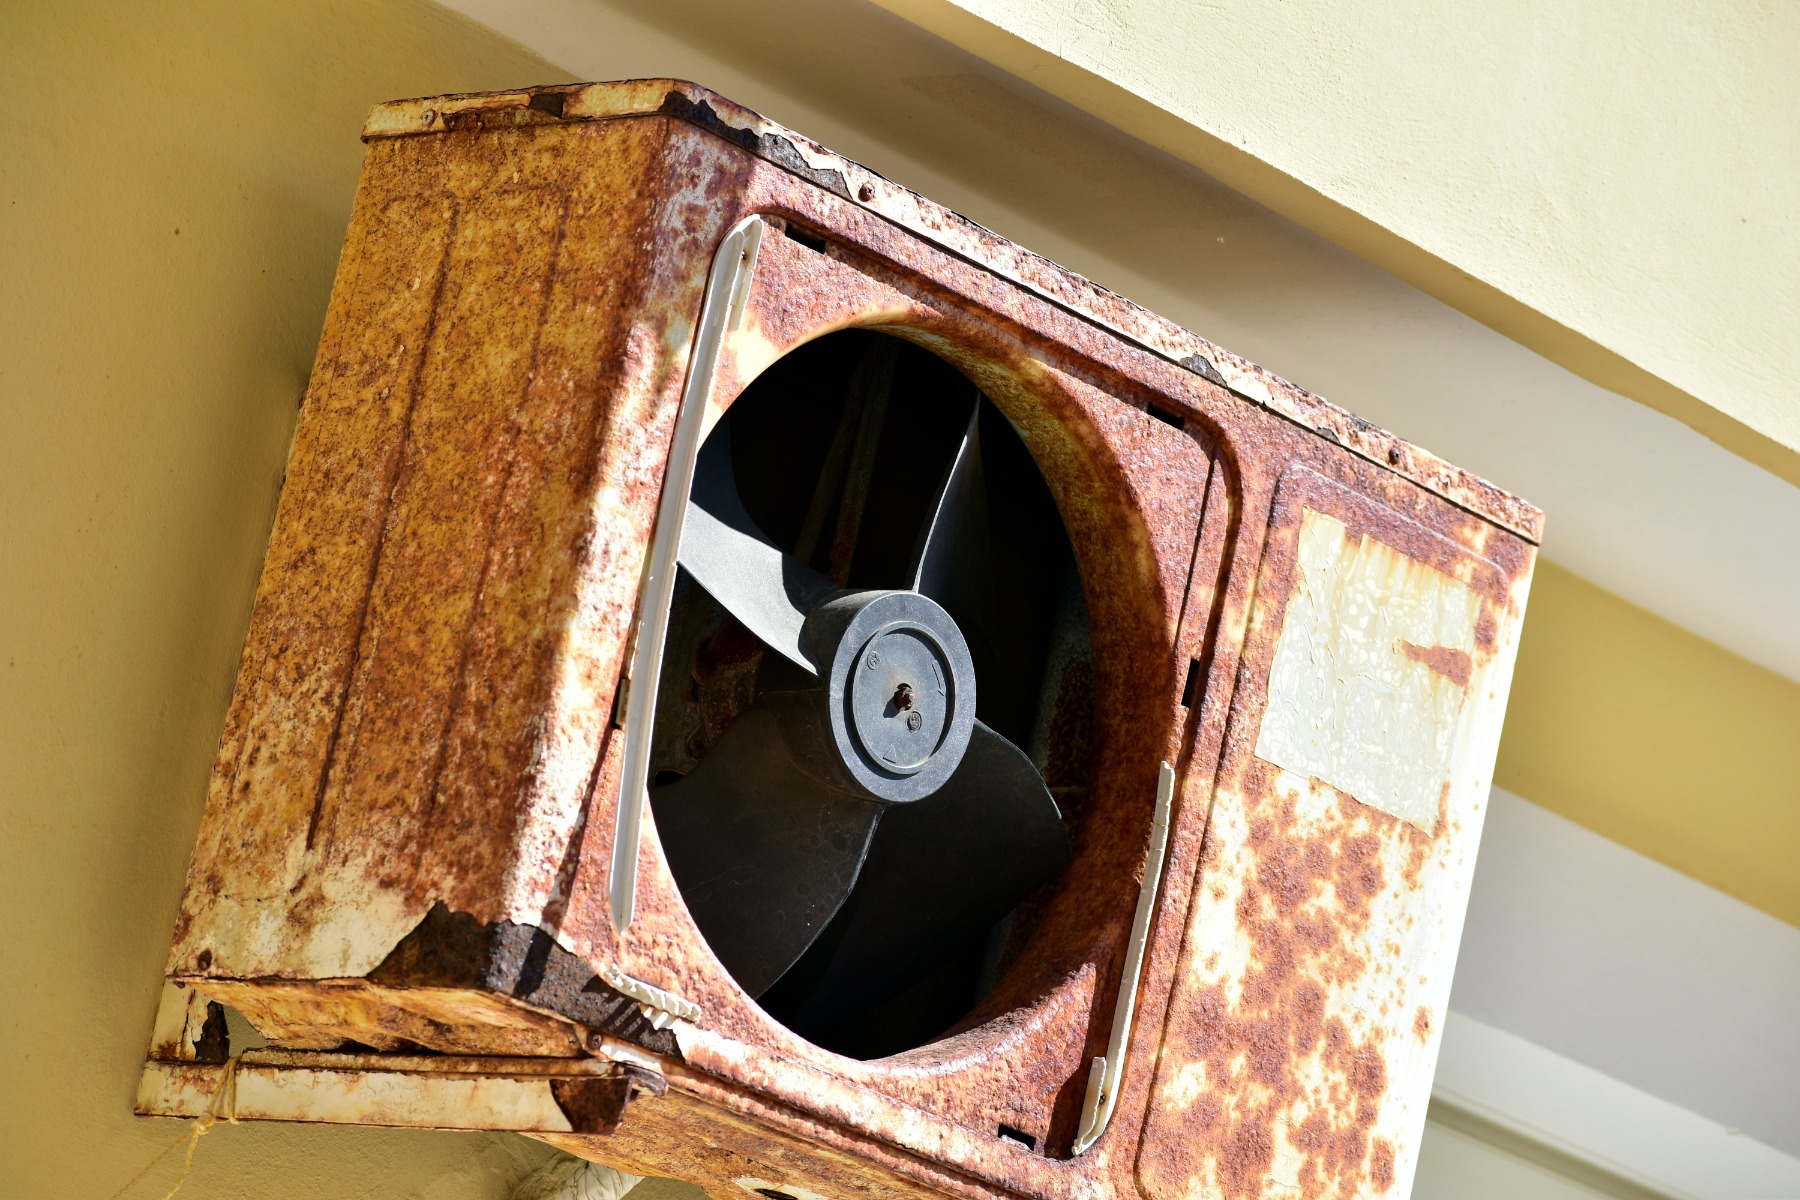 Rusty metal fan mounted on the wall